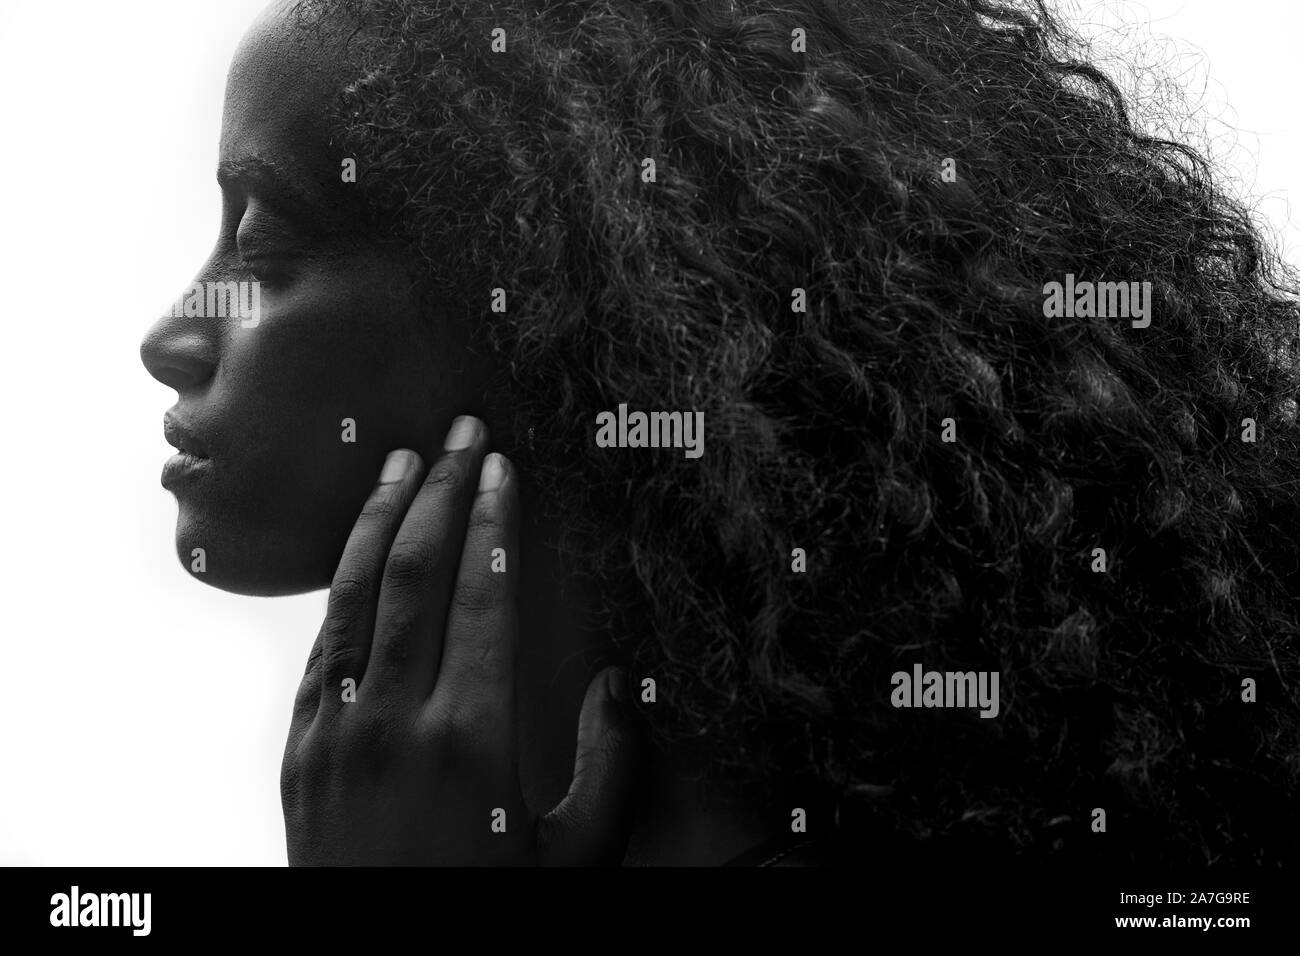 Profil Portrait von eine schöne junge afrikanische Frau mit dicken lockigen Haar sanft ihr Gesicht zu berühren, auf weißem Hintergrund Stockfoto